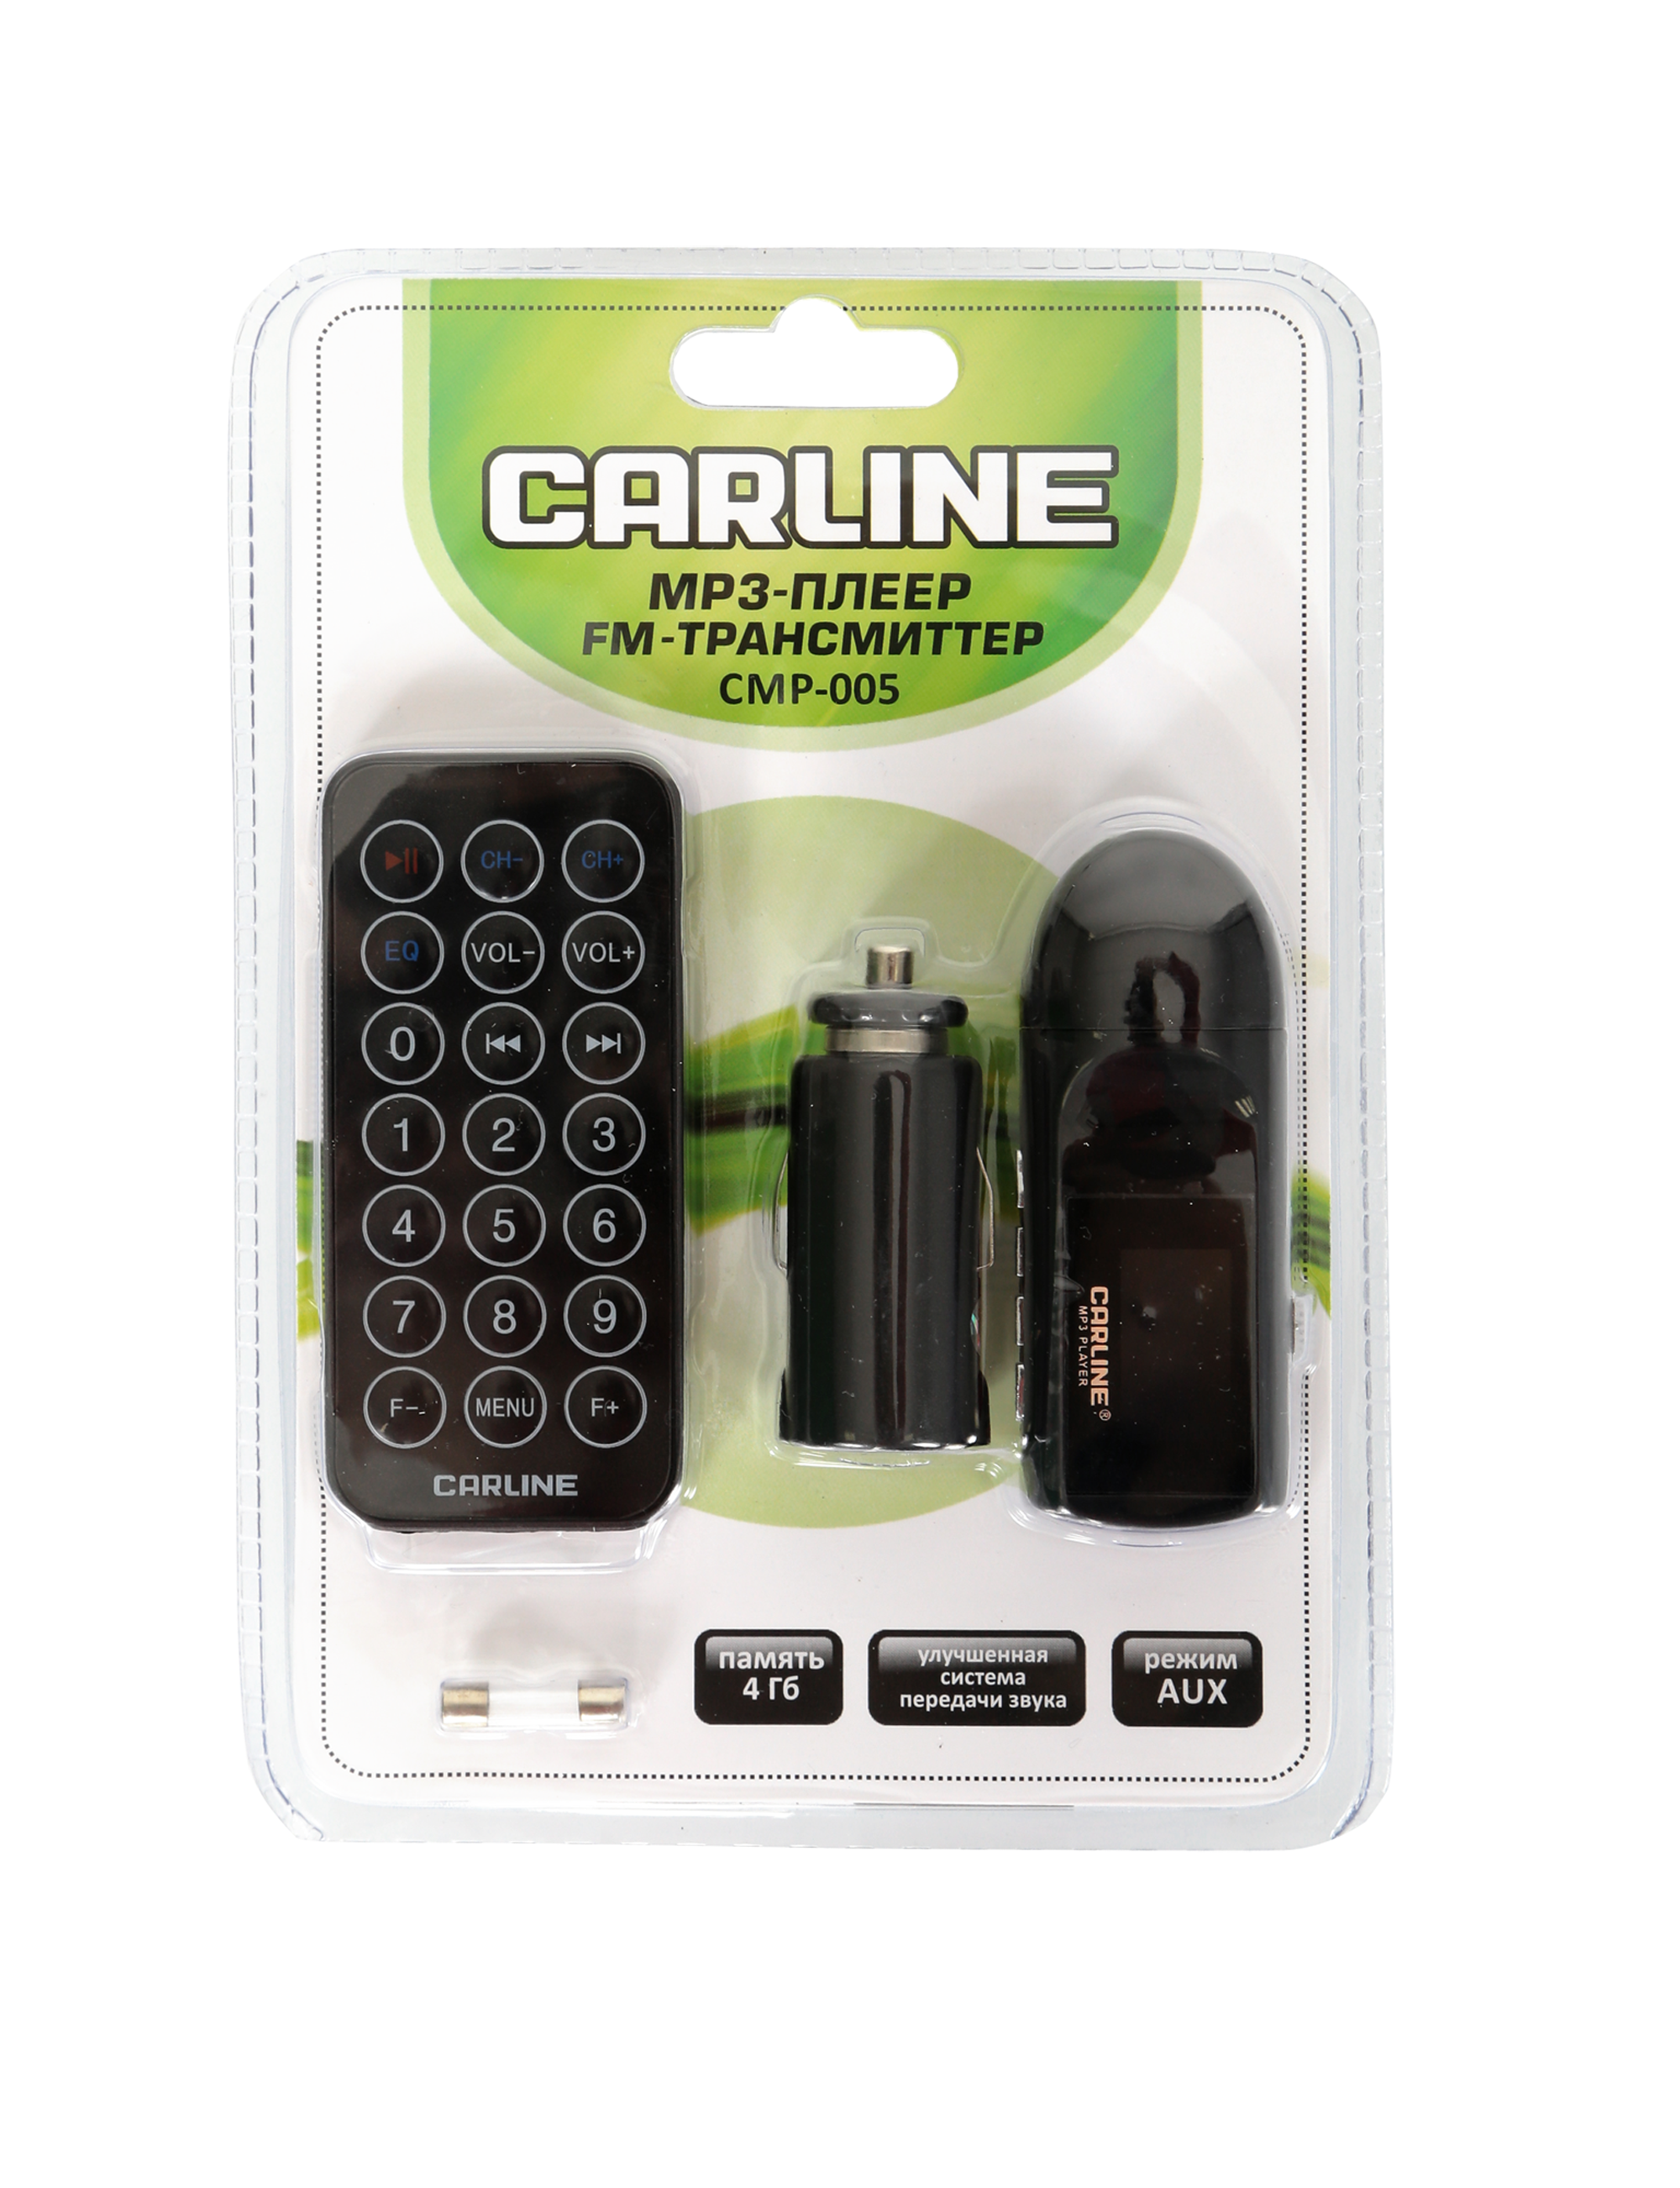 CARLINE FM-трансмиттер автомобильный + мобильный MP3-плеер, LCD с подсветкой, поддержка MP3,WMA, USB-порт, встроенная память 4 Гб, AUX выход, пульт дистанционного управления